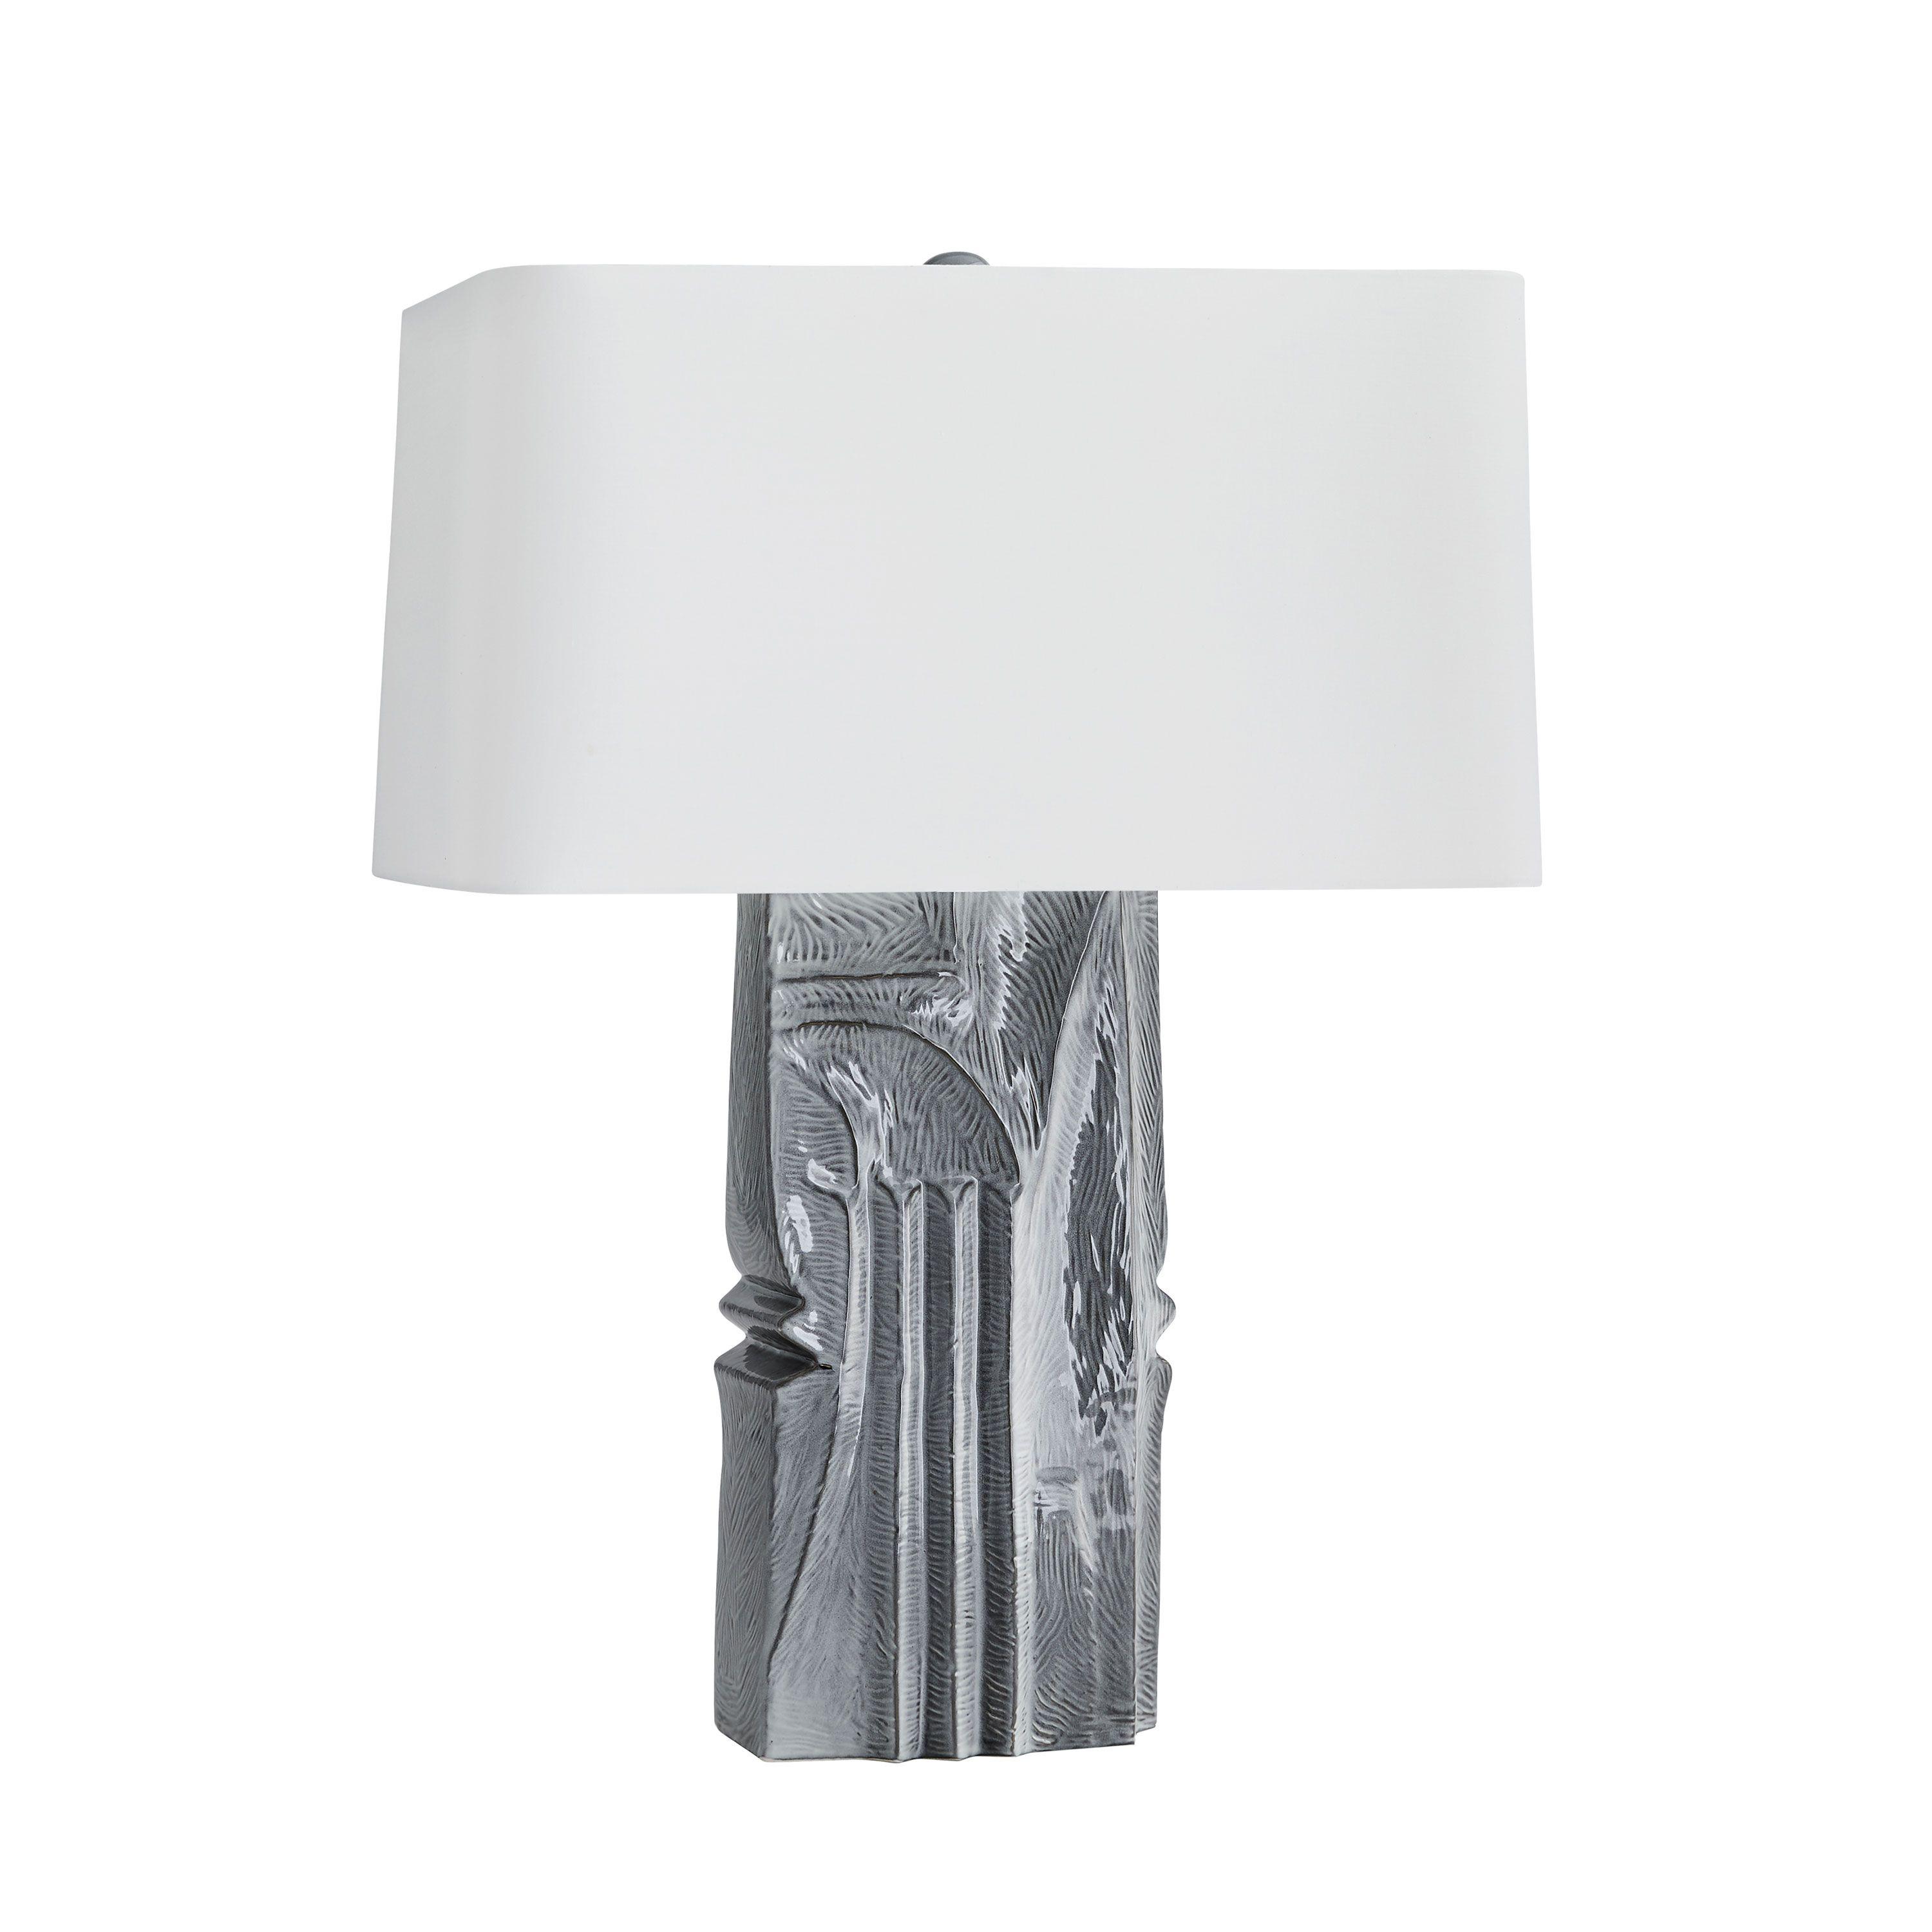 Купить Настольная лампа Becca Lamp в интернет-магазине roooms.ru